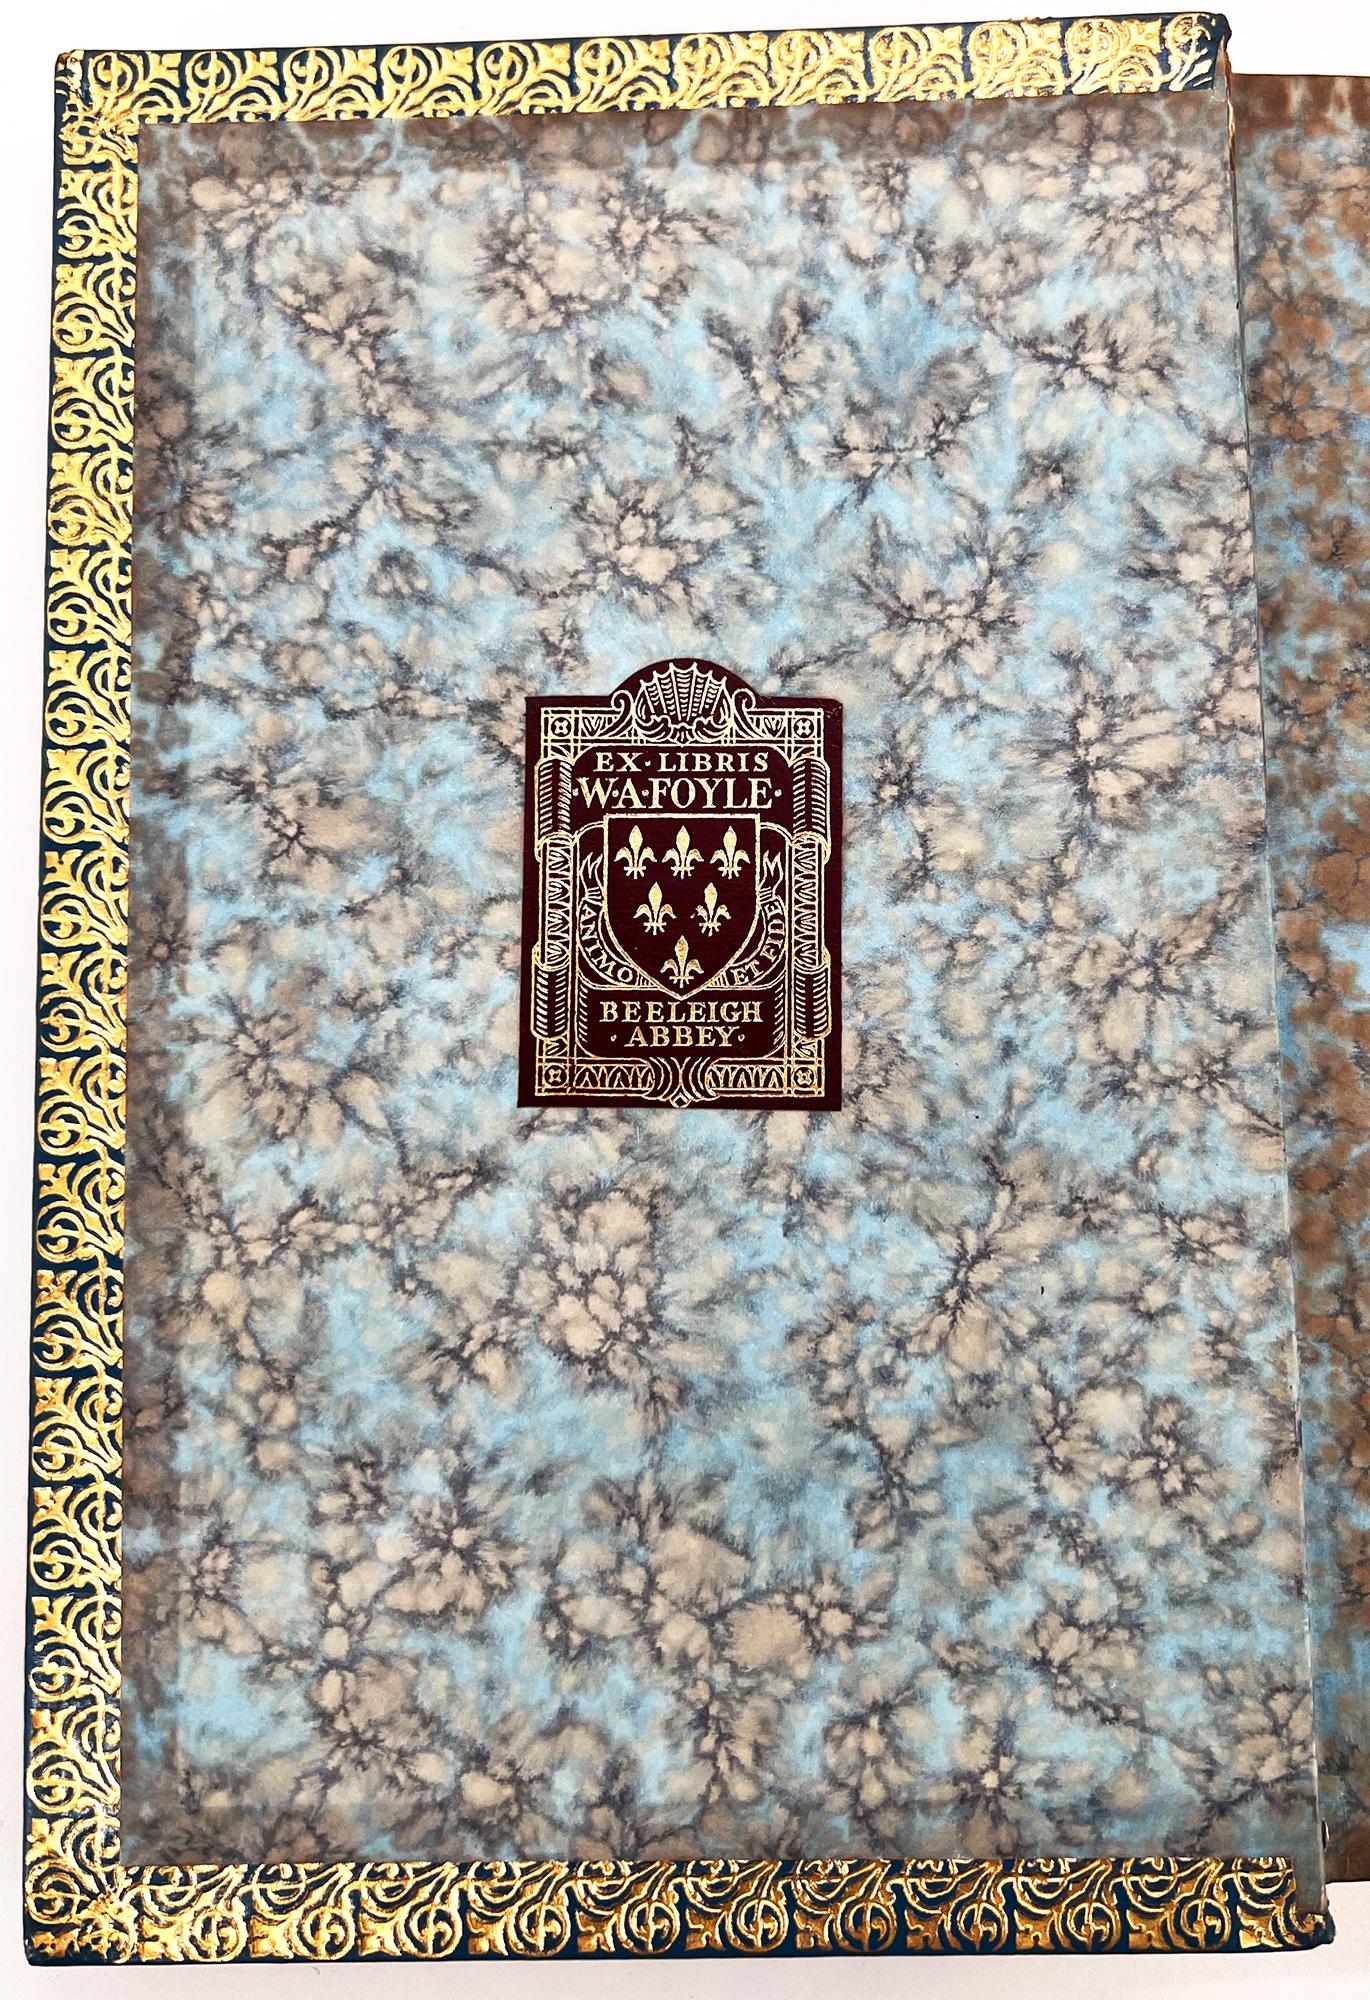 PREMIÈRE ÉDITION ANGLAISE / PREMIÈRE ÉDITION
Londres : Longmans, Green and Co, 1887. 
8vo. 7 1/4 x 4 3/4 (184 x 120 mm) ; viii, 31, ii advert. ; deux lithographies en couleurs se faisant face sur une seule pliure de papier fort précèdent le titre,